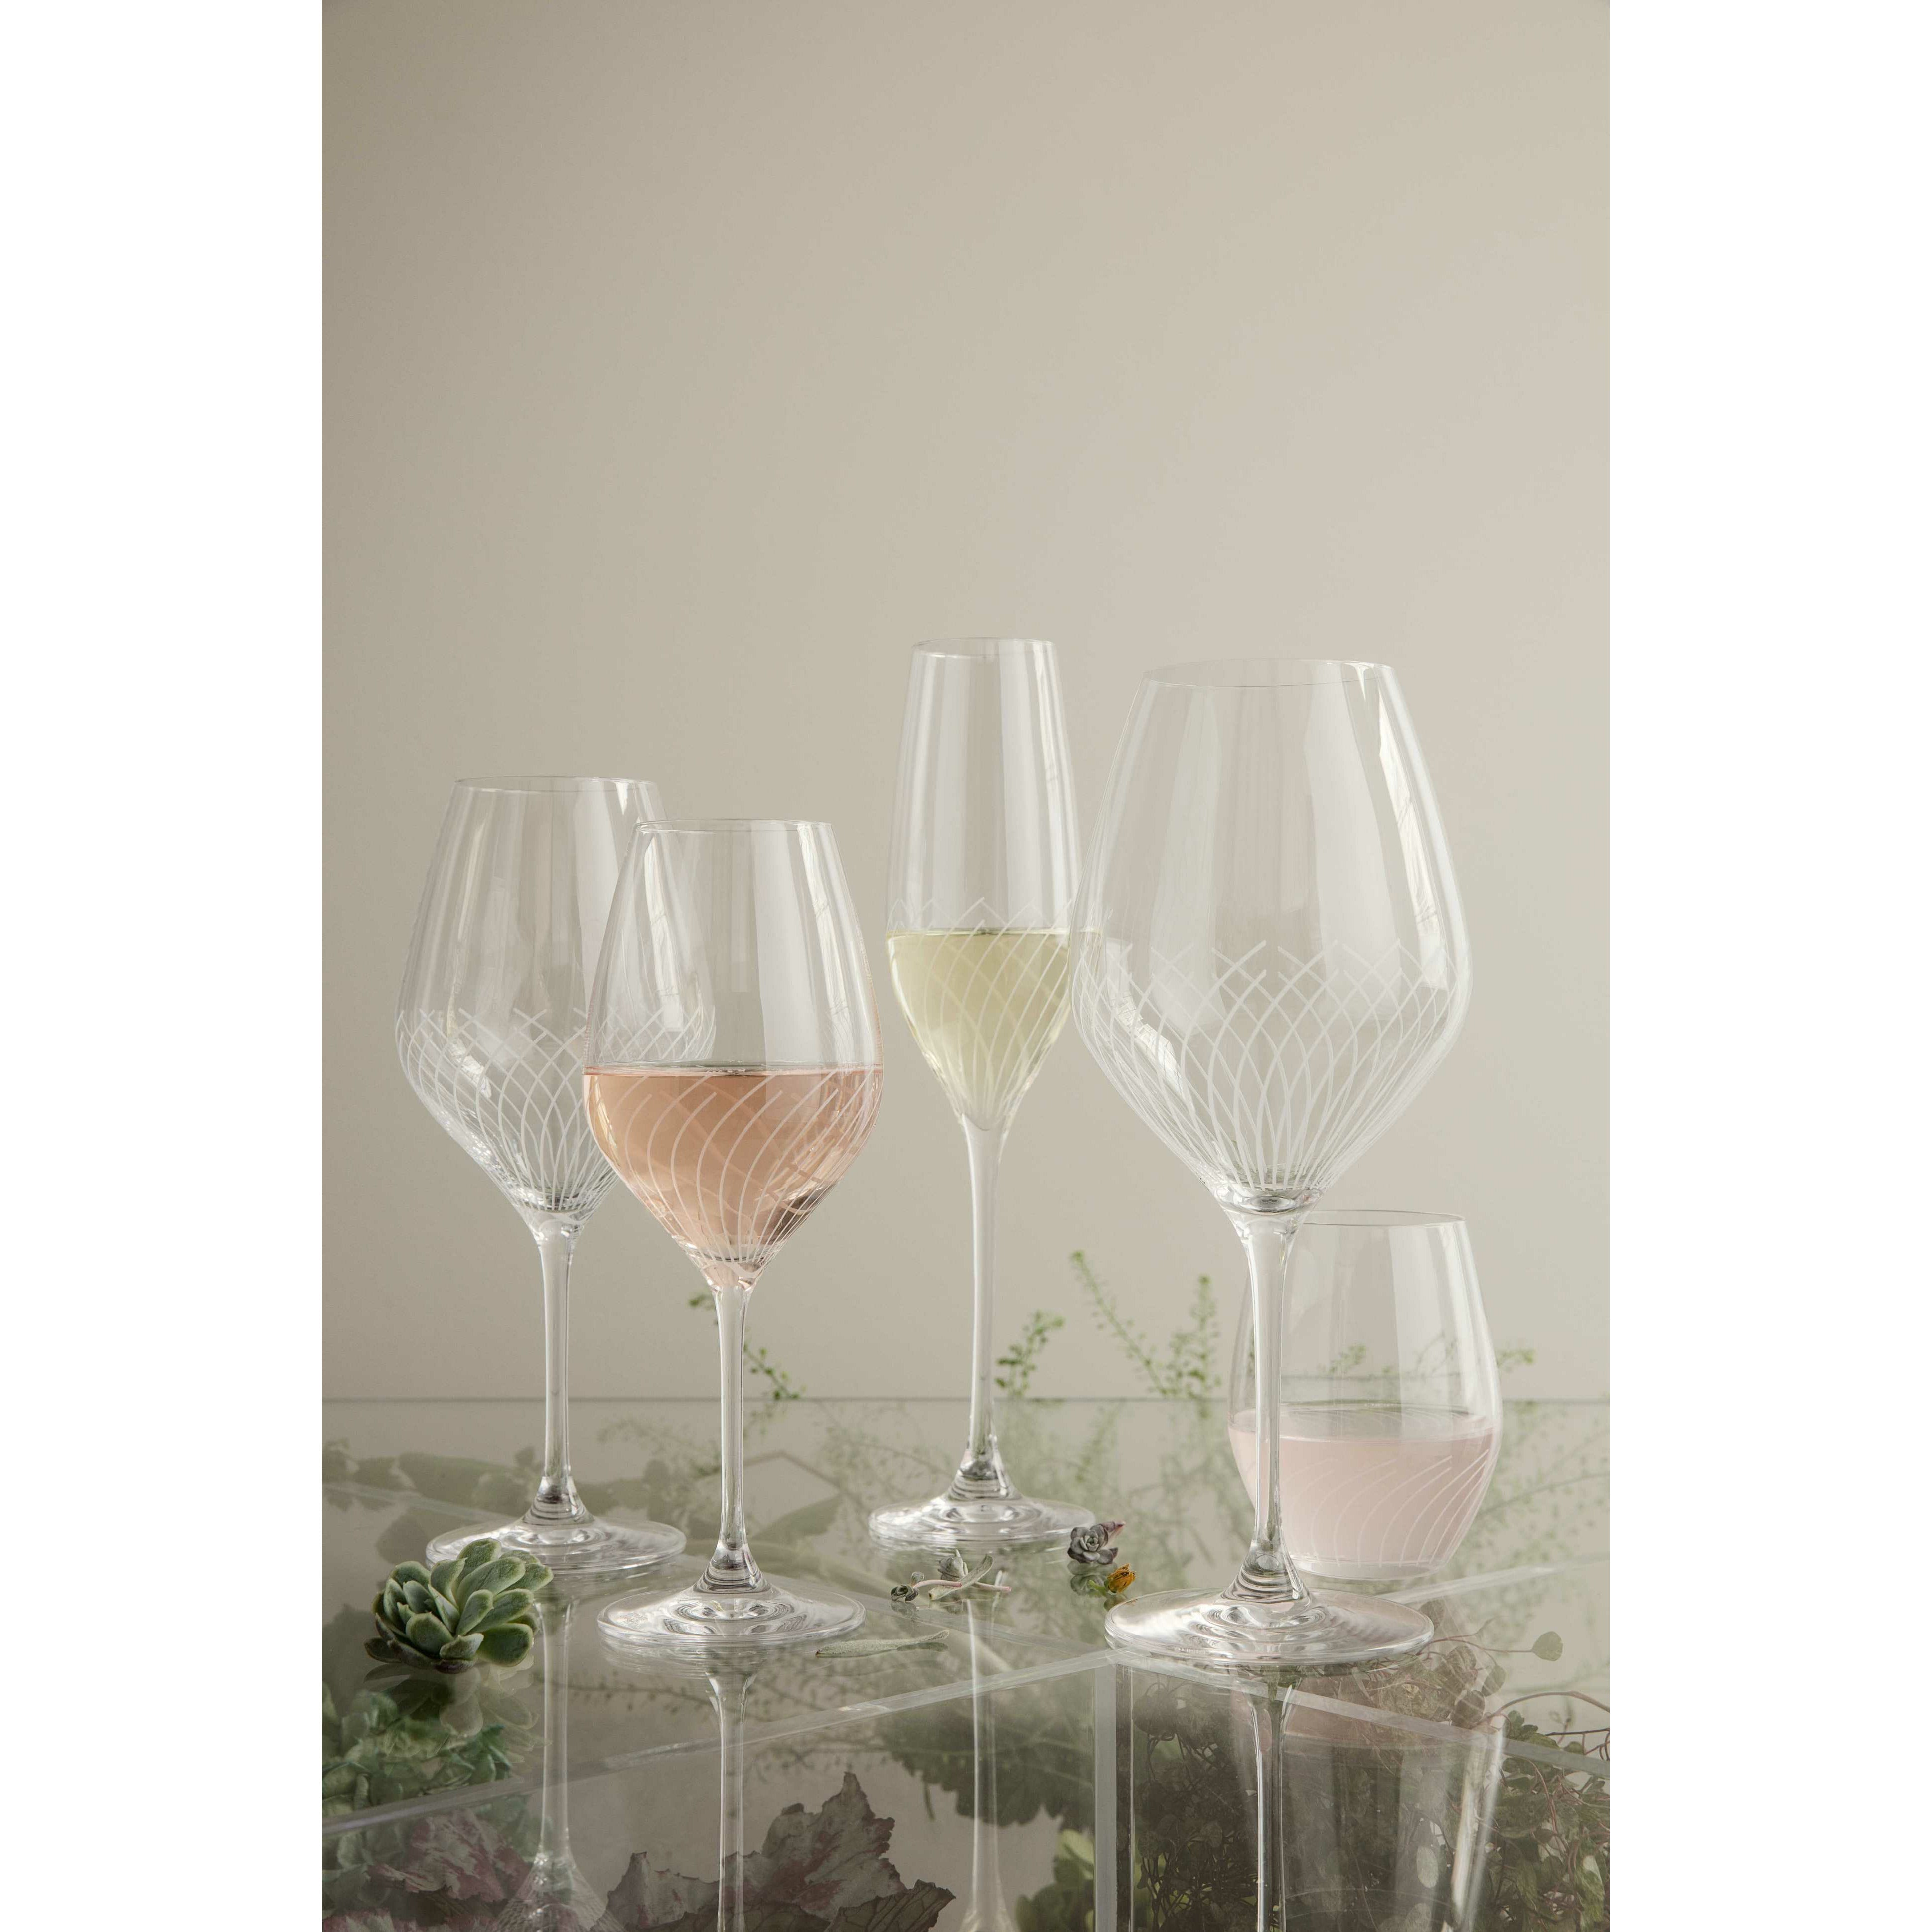 Holmegaard Cabernet Lines Champagne Glass, 2 stk.